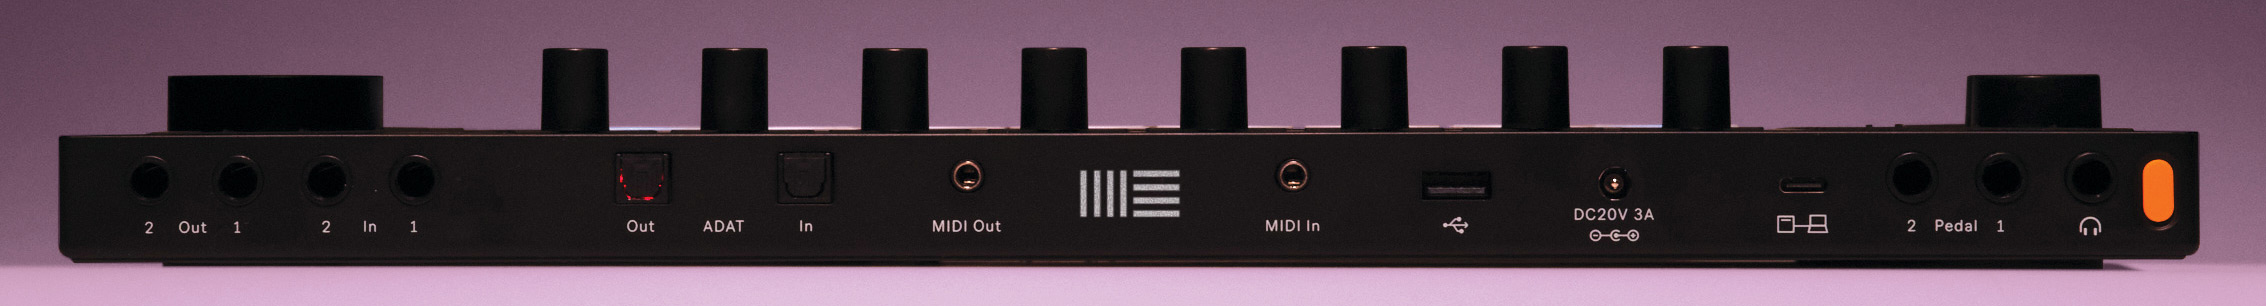 La conectividad de Ableton Push 3 incluye un interface de audio a bordo, MIDI, CV, E/S ADAT lightpipe, y entradas para pedales de control